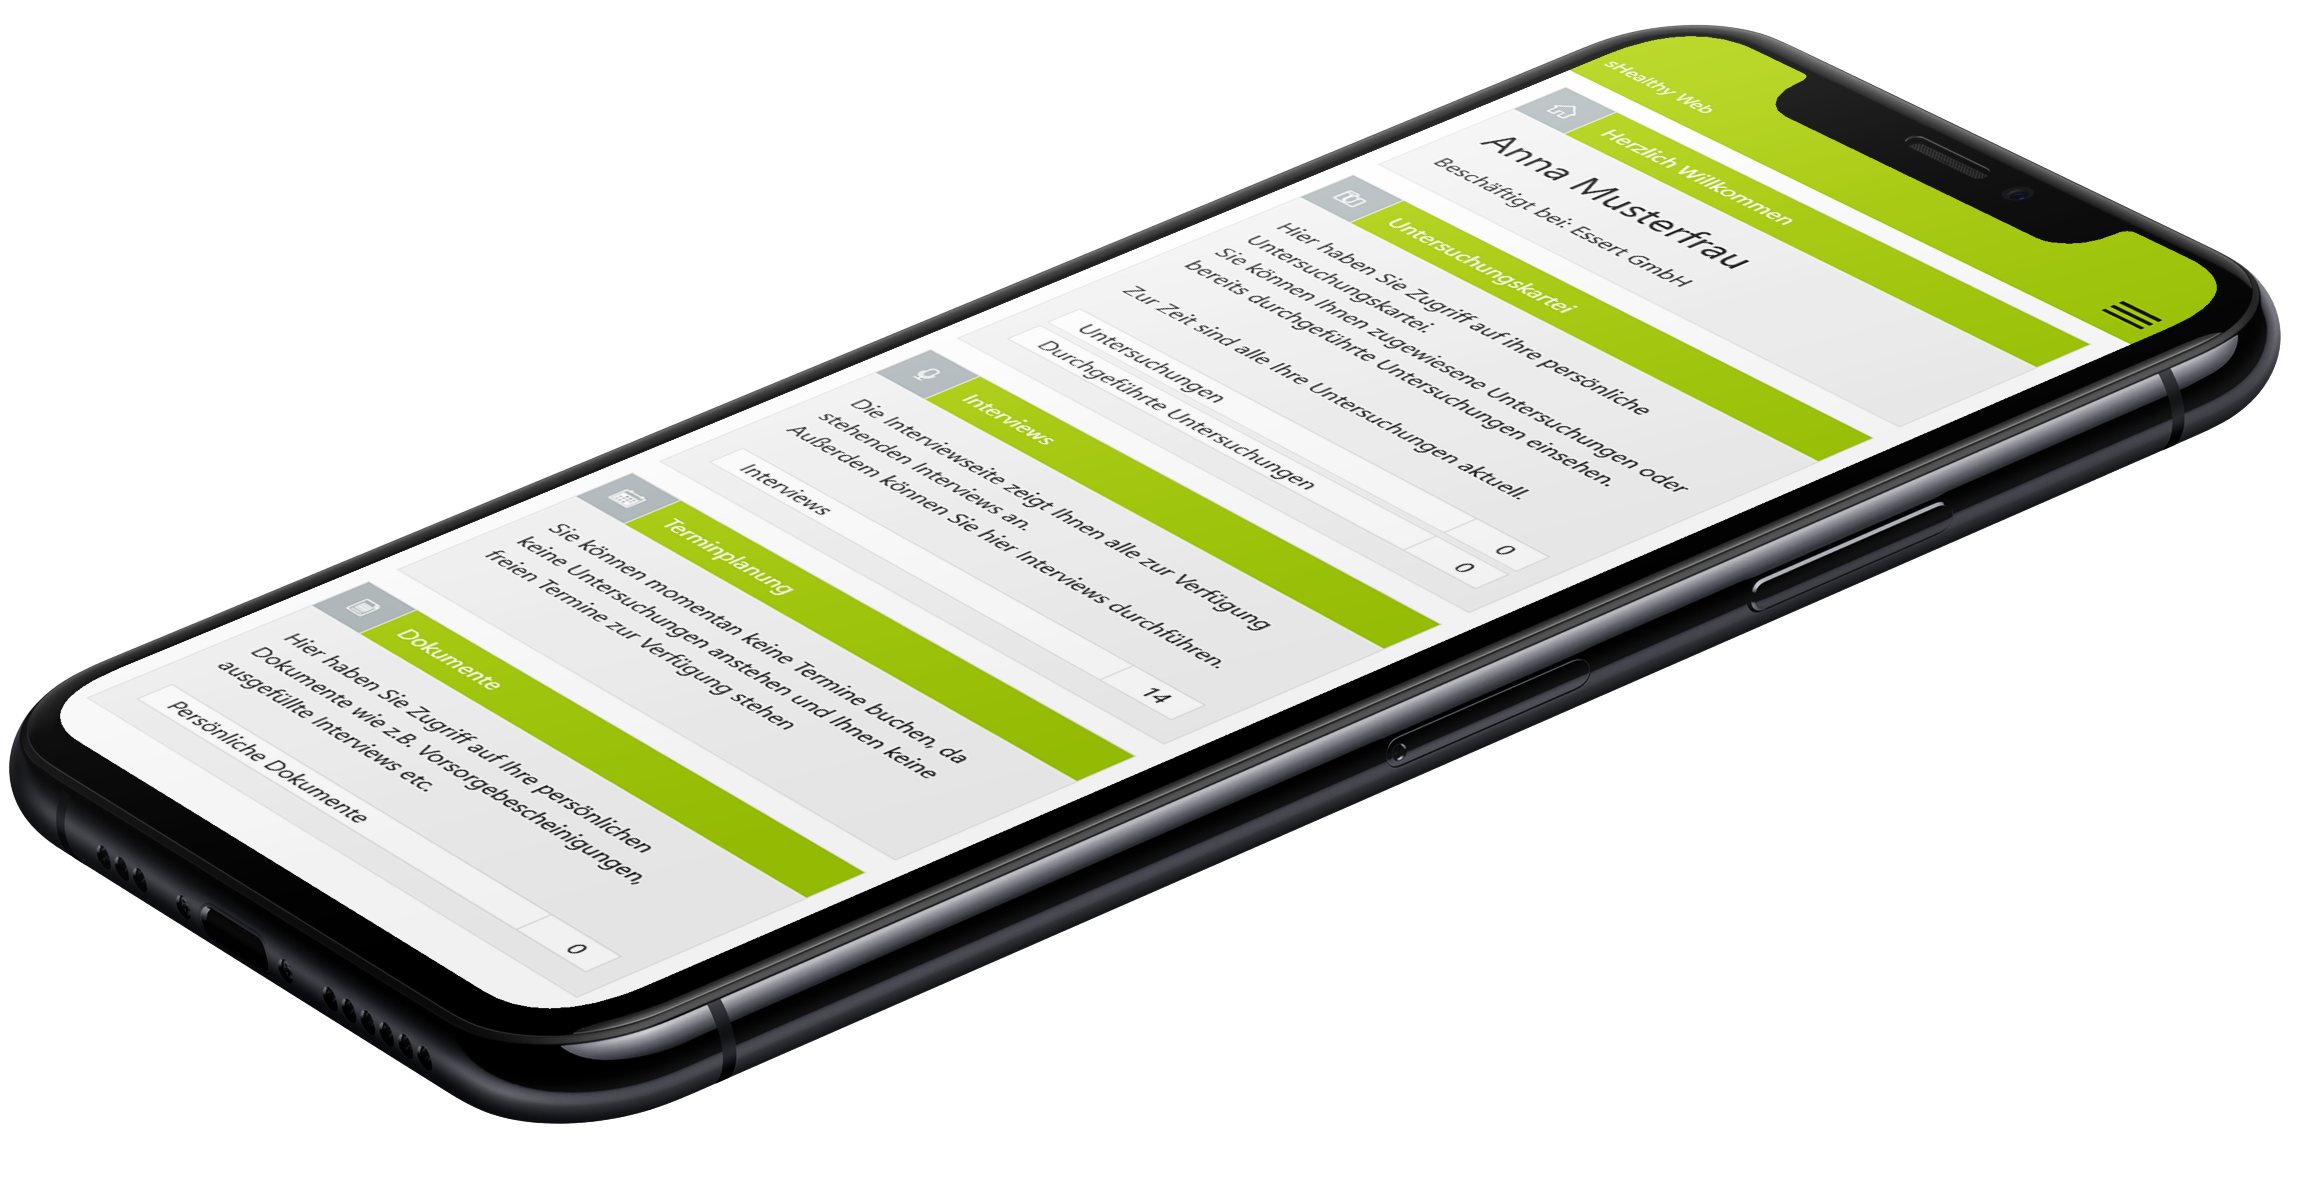 Anmeldung Mobile mit Screen aus der Plattform sHealthy